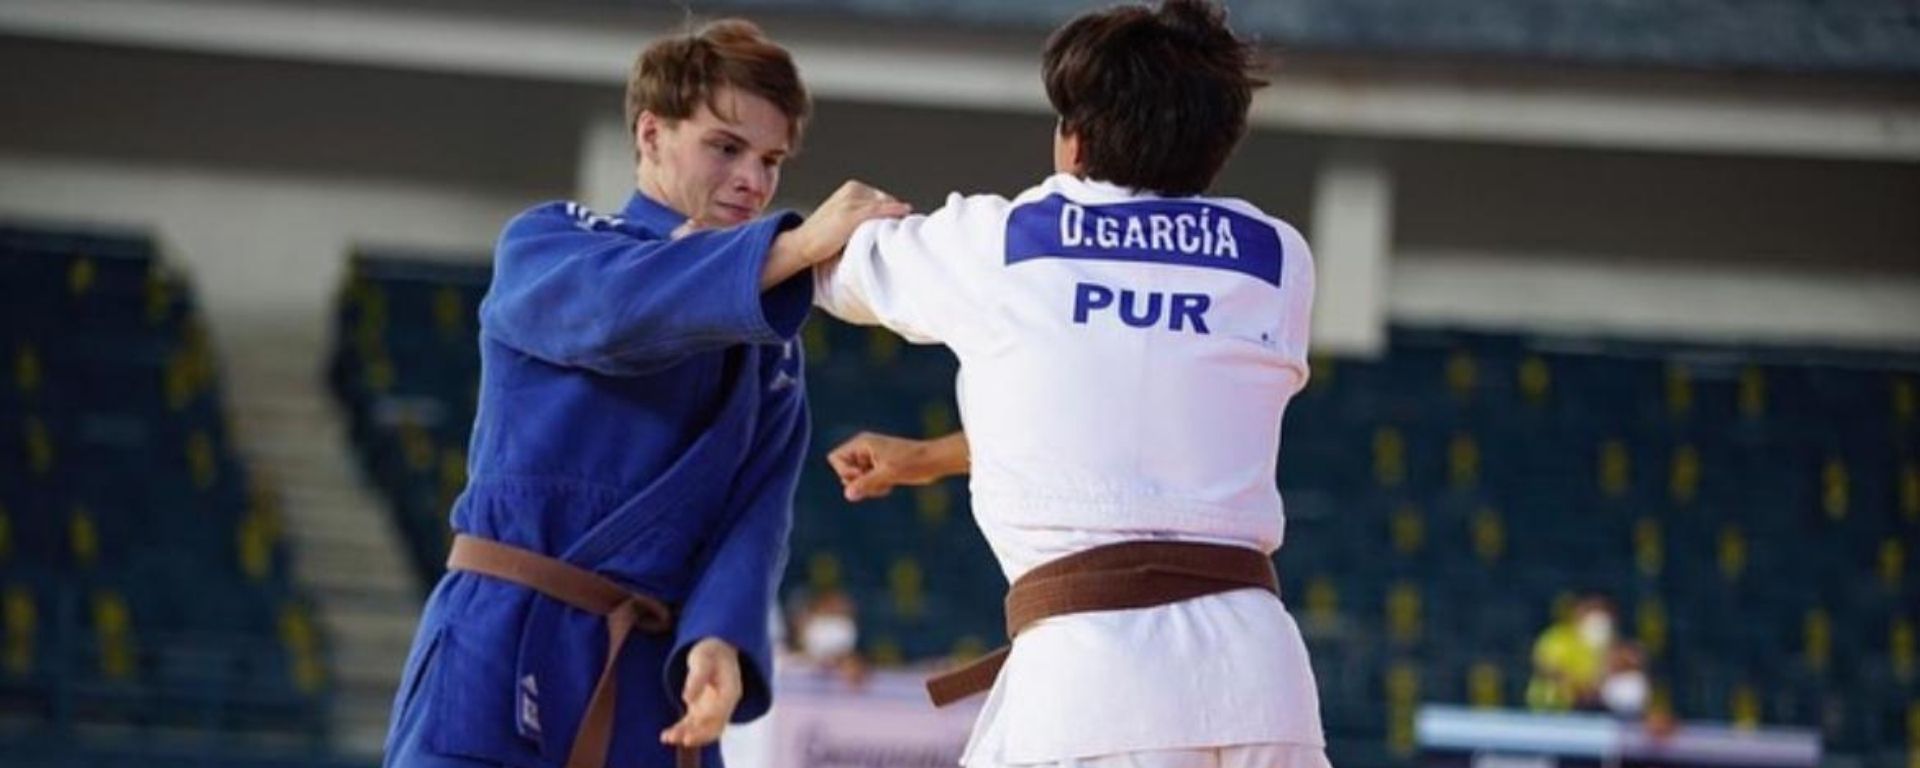 Alumno de FIUM obtuvo medalla de bronce en competencia sudamericana de judo 